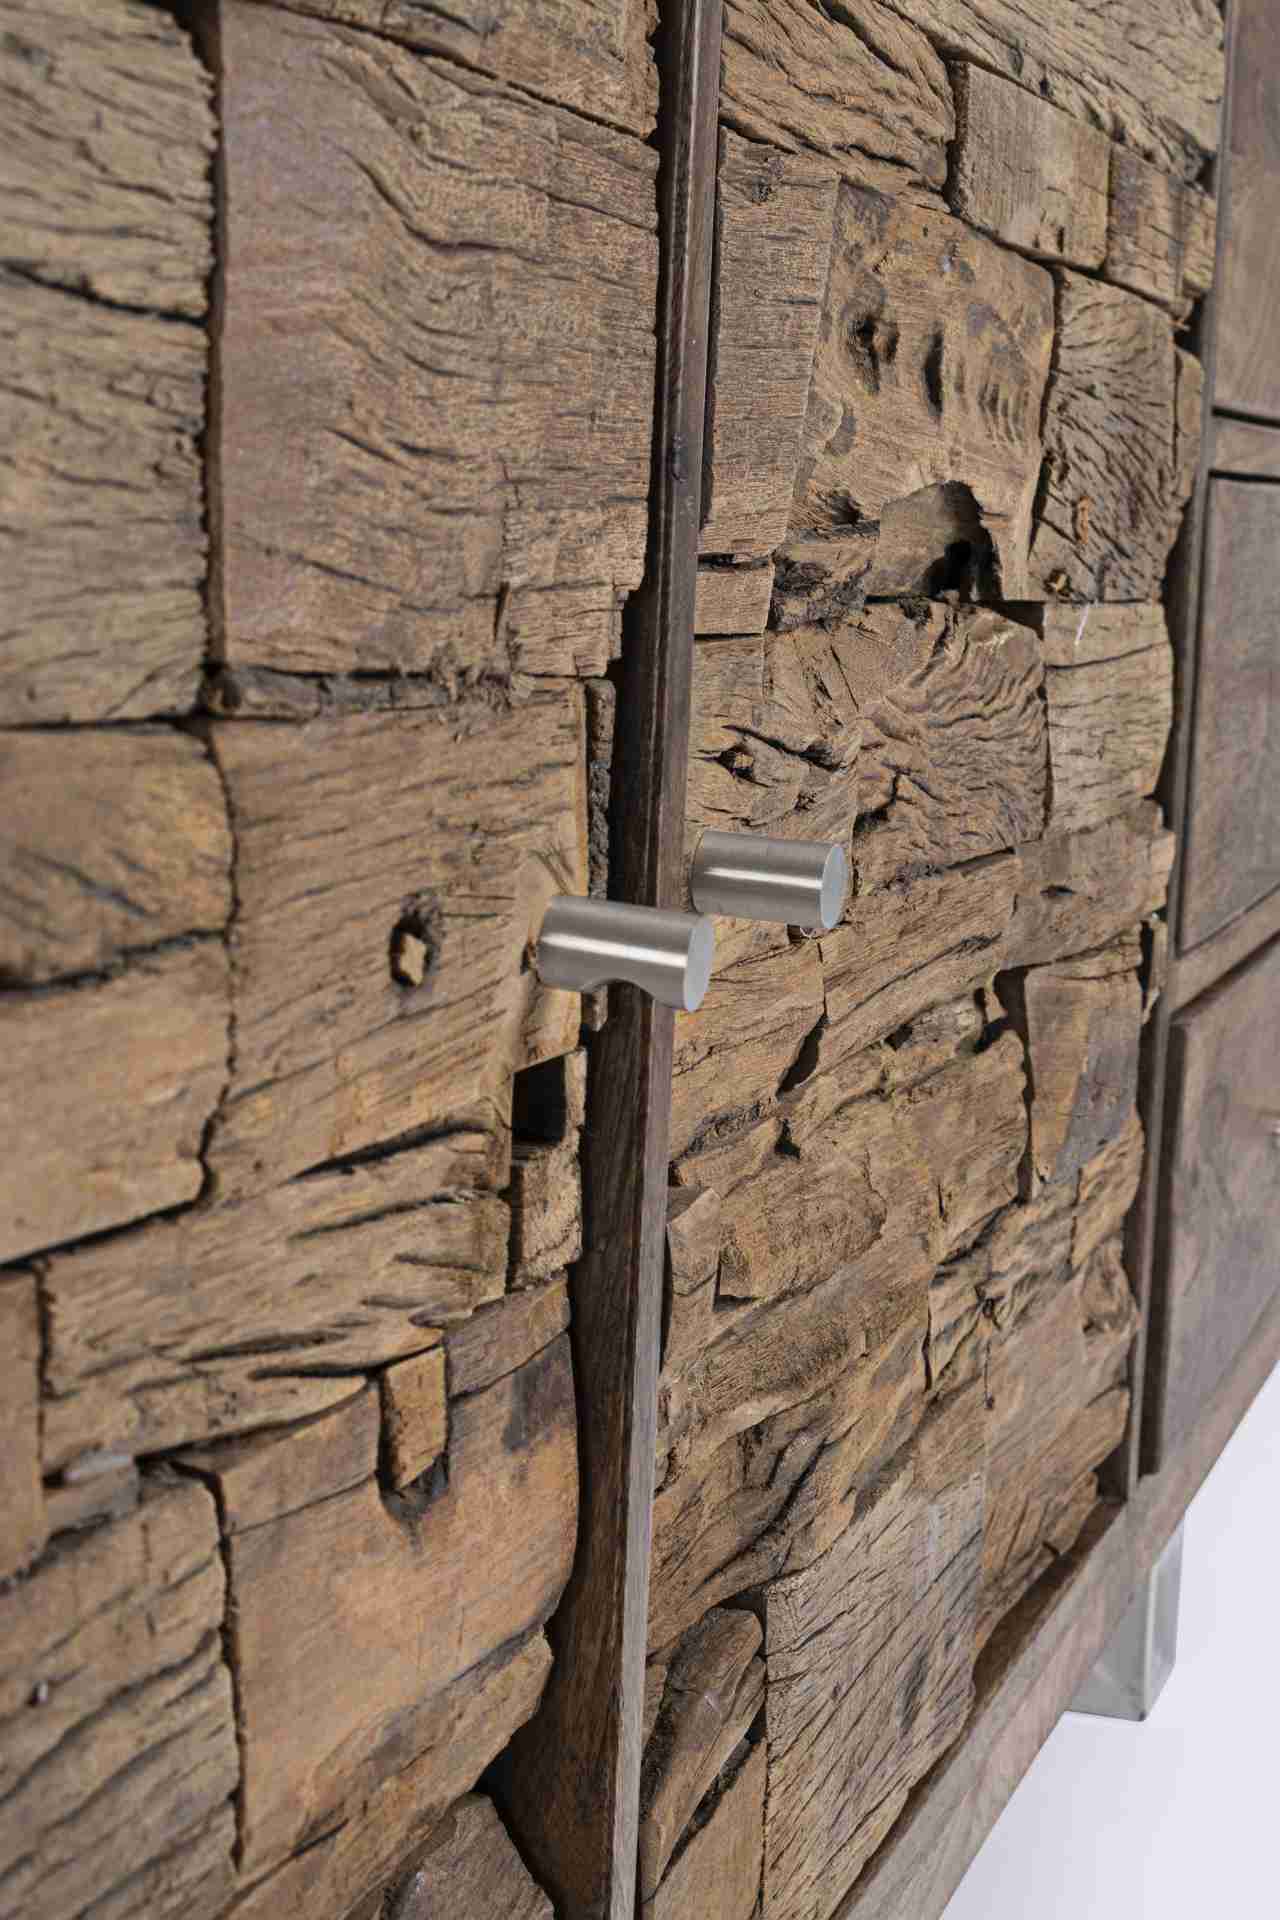 Das Sideboard Stanton überzeugt mit seinem modernen Design. Gefertigt wurde es aus Mango-Holz, welches einen natürlichen Farbton besitzt. Das Gestell ist aus Metall und hat eine silberne Farbe. Das Sideboard verfügt über zwei Türen und drei Schubladen. Di